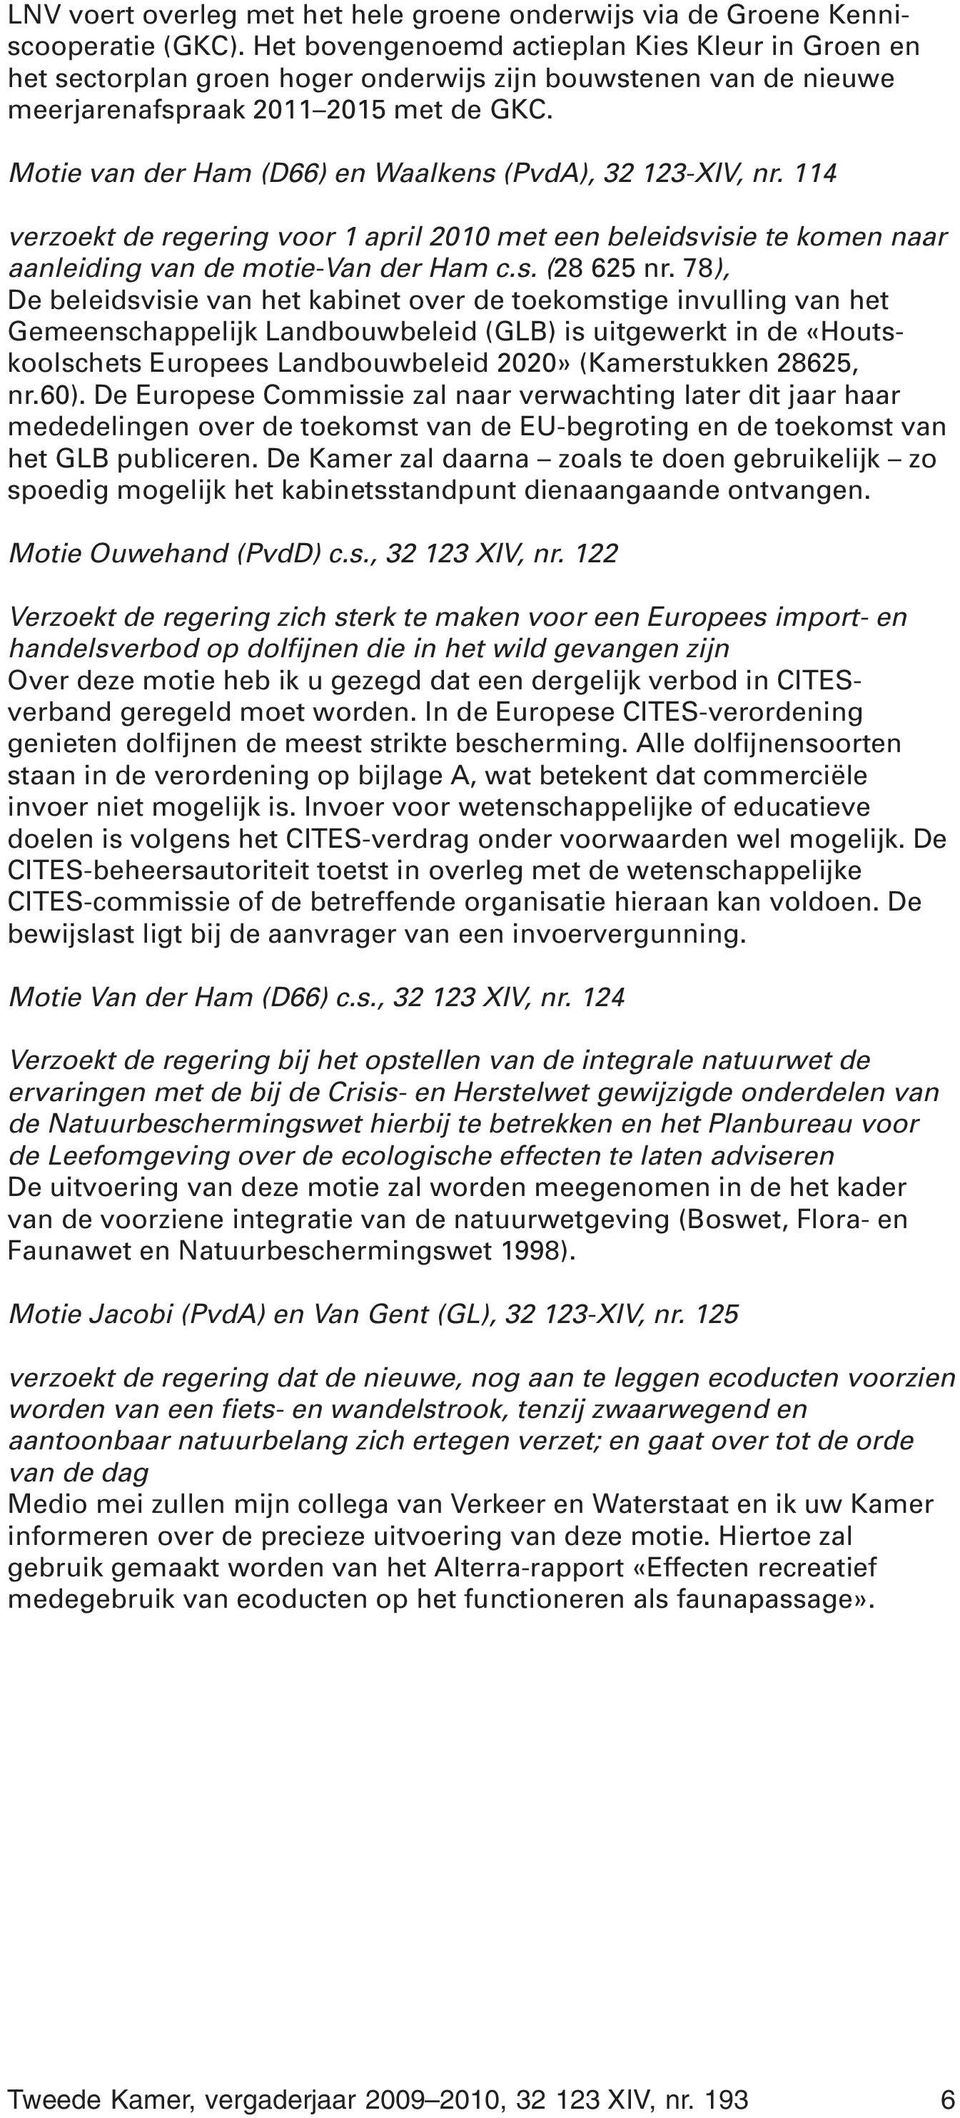 Motie van der Ham (D66) en Waalkens (PvdA), 32 123-XIV, nr. 114 verzoekt de regering voor 1 april 2010 met een beleidsvisie te komen naar aanleiding van de motie-van der Ham c.s. (28 625 nr.